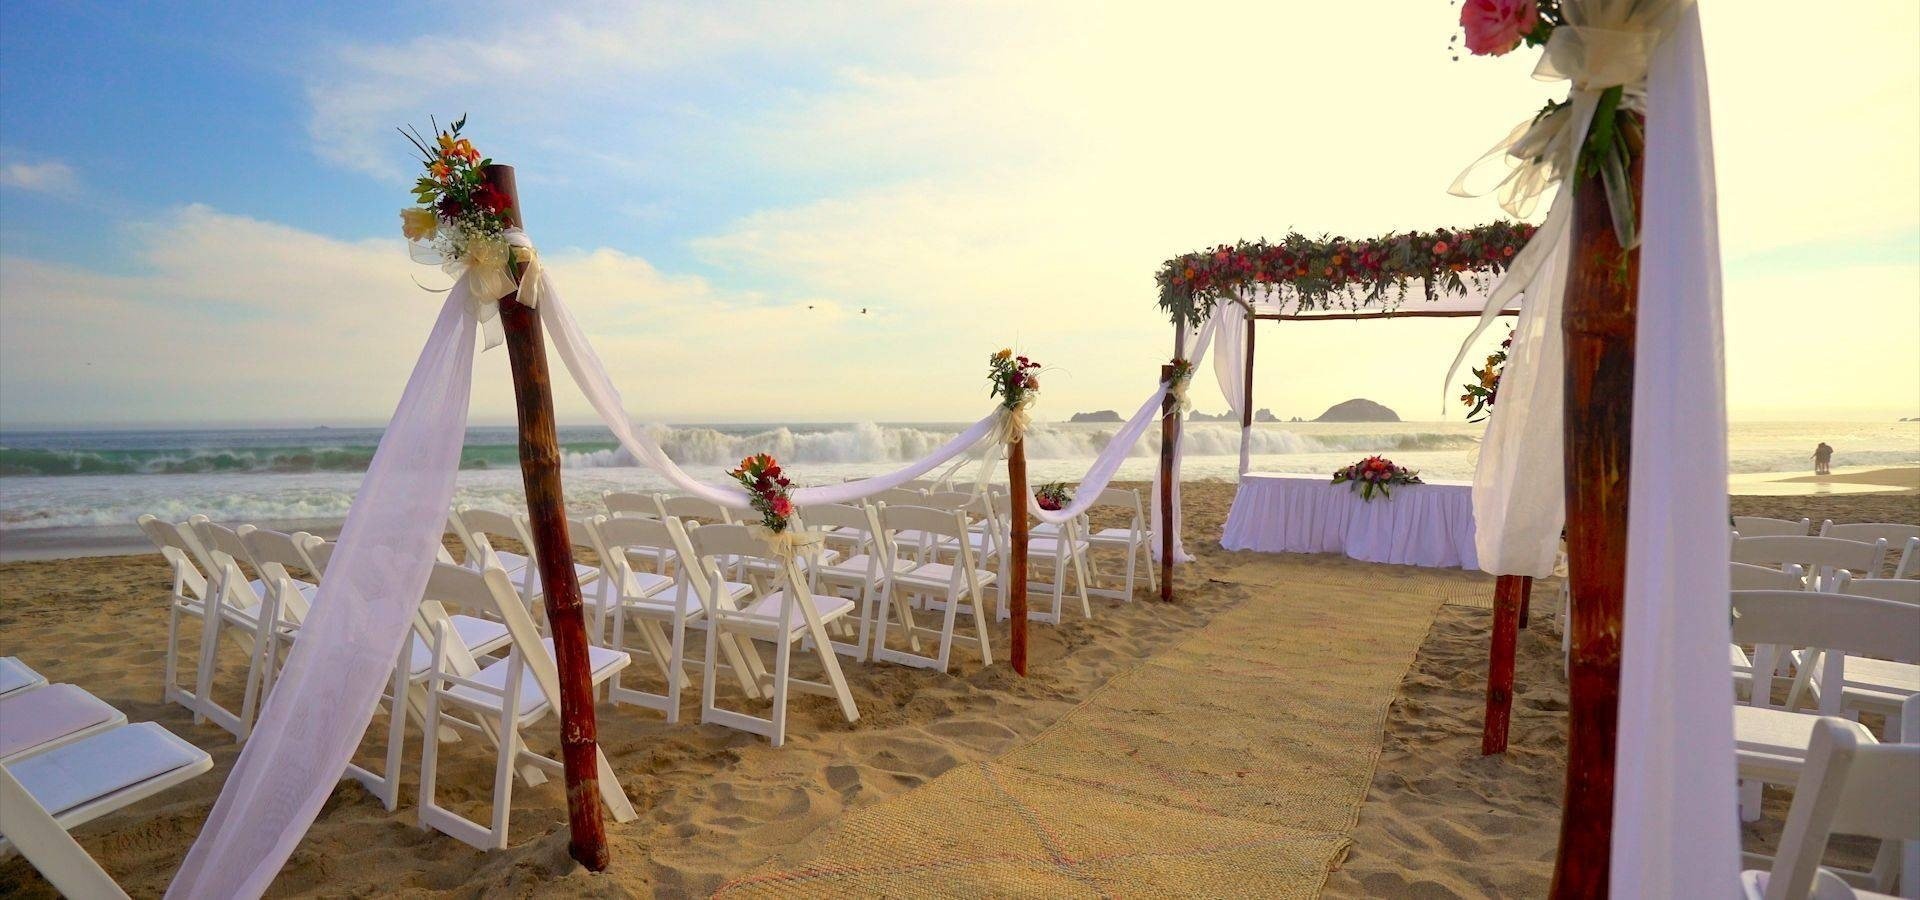 Altar decorado para bodas, cásate en la playa con Park Royal Hotels and Resorts